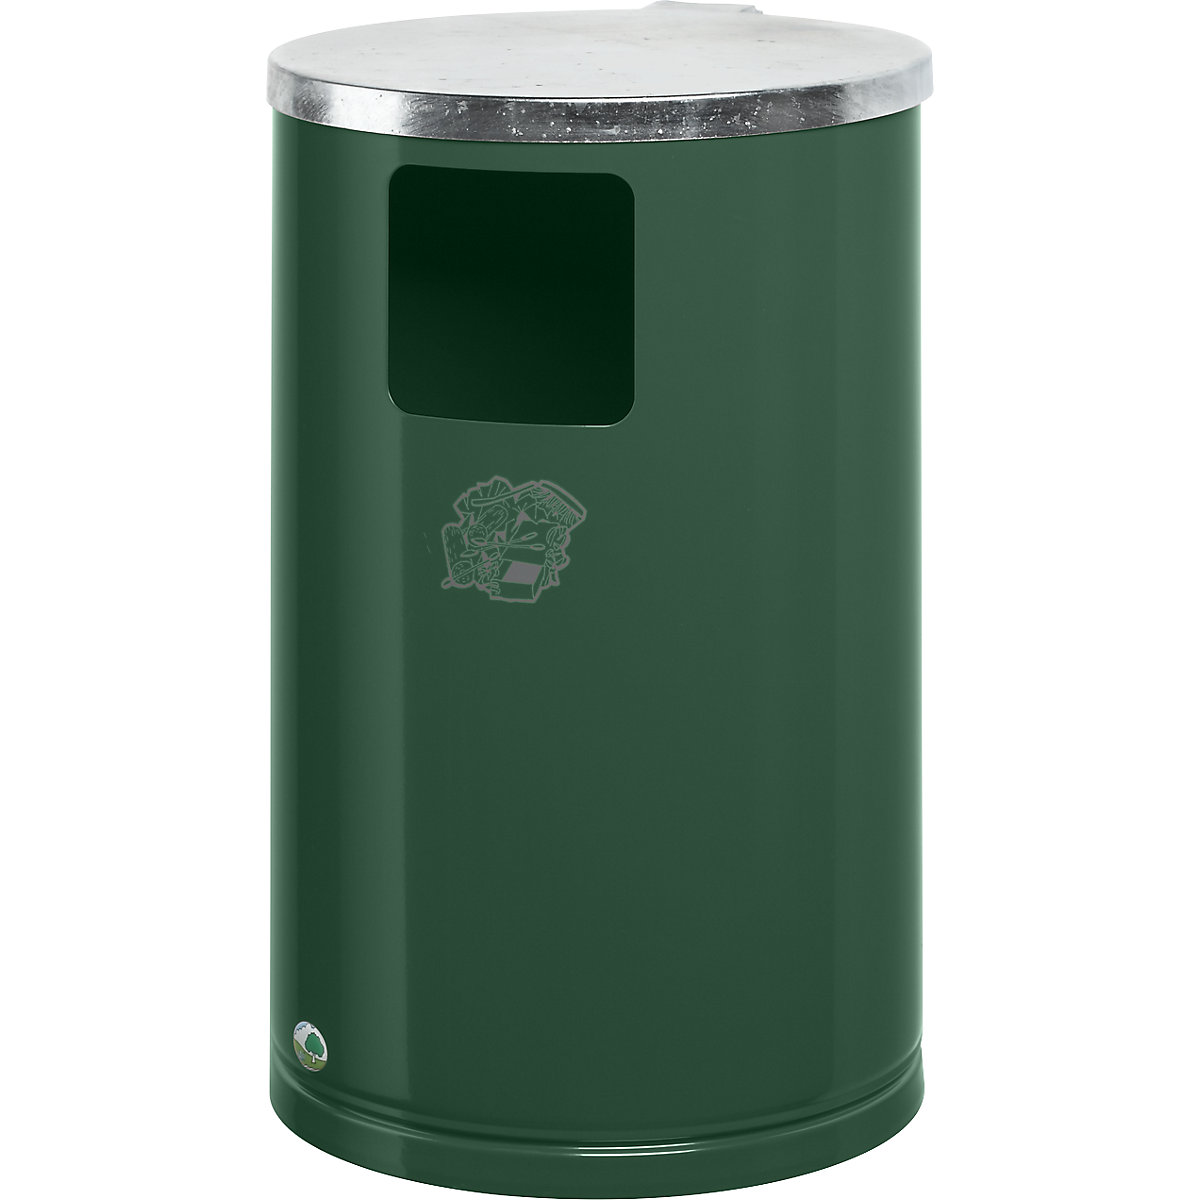 Vanjski spremnik za otpad od čeličnog lima – VAR, volumen 30 l, VxØ 620 x 300 mm, u zelenoj boji-6